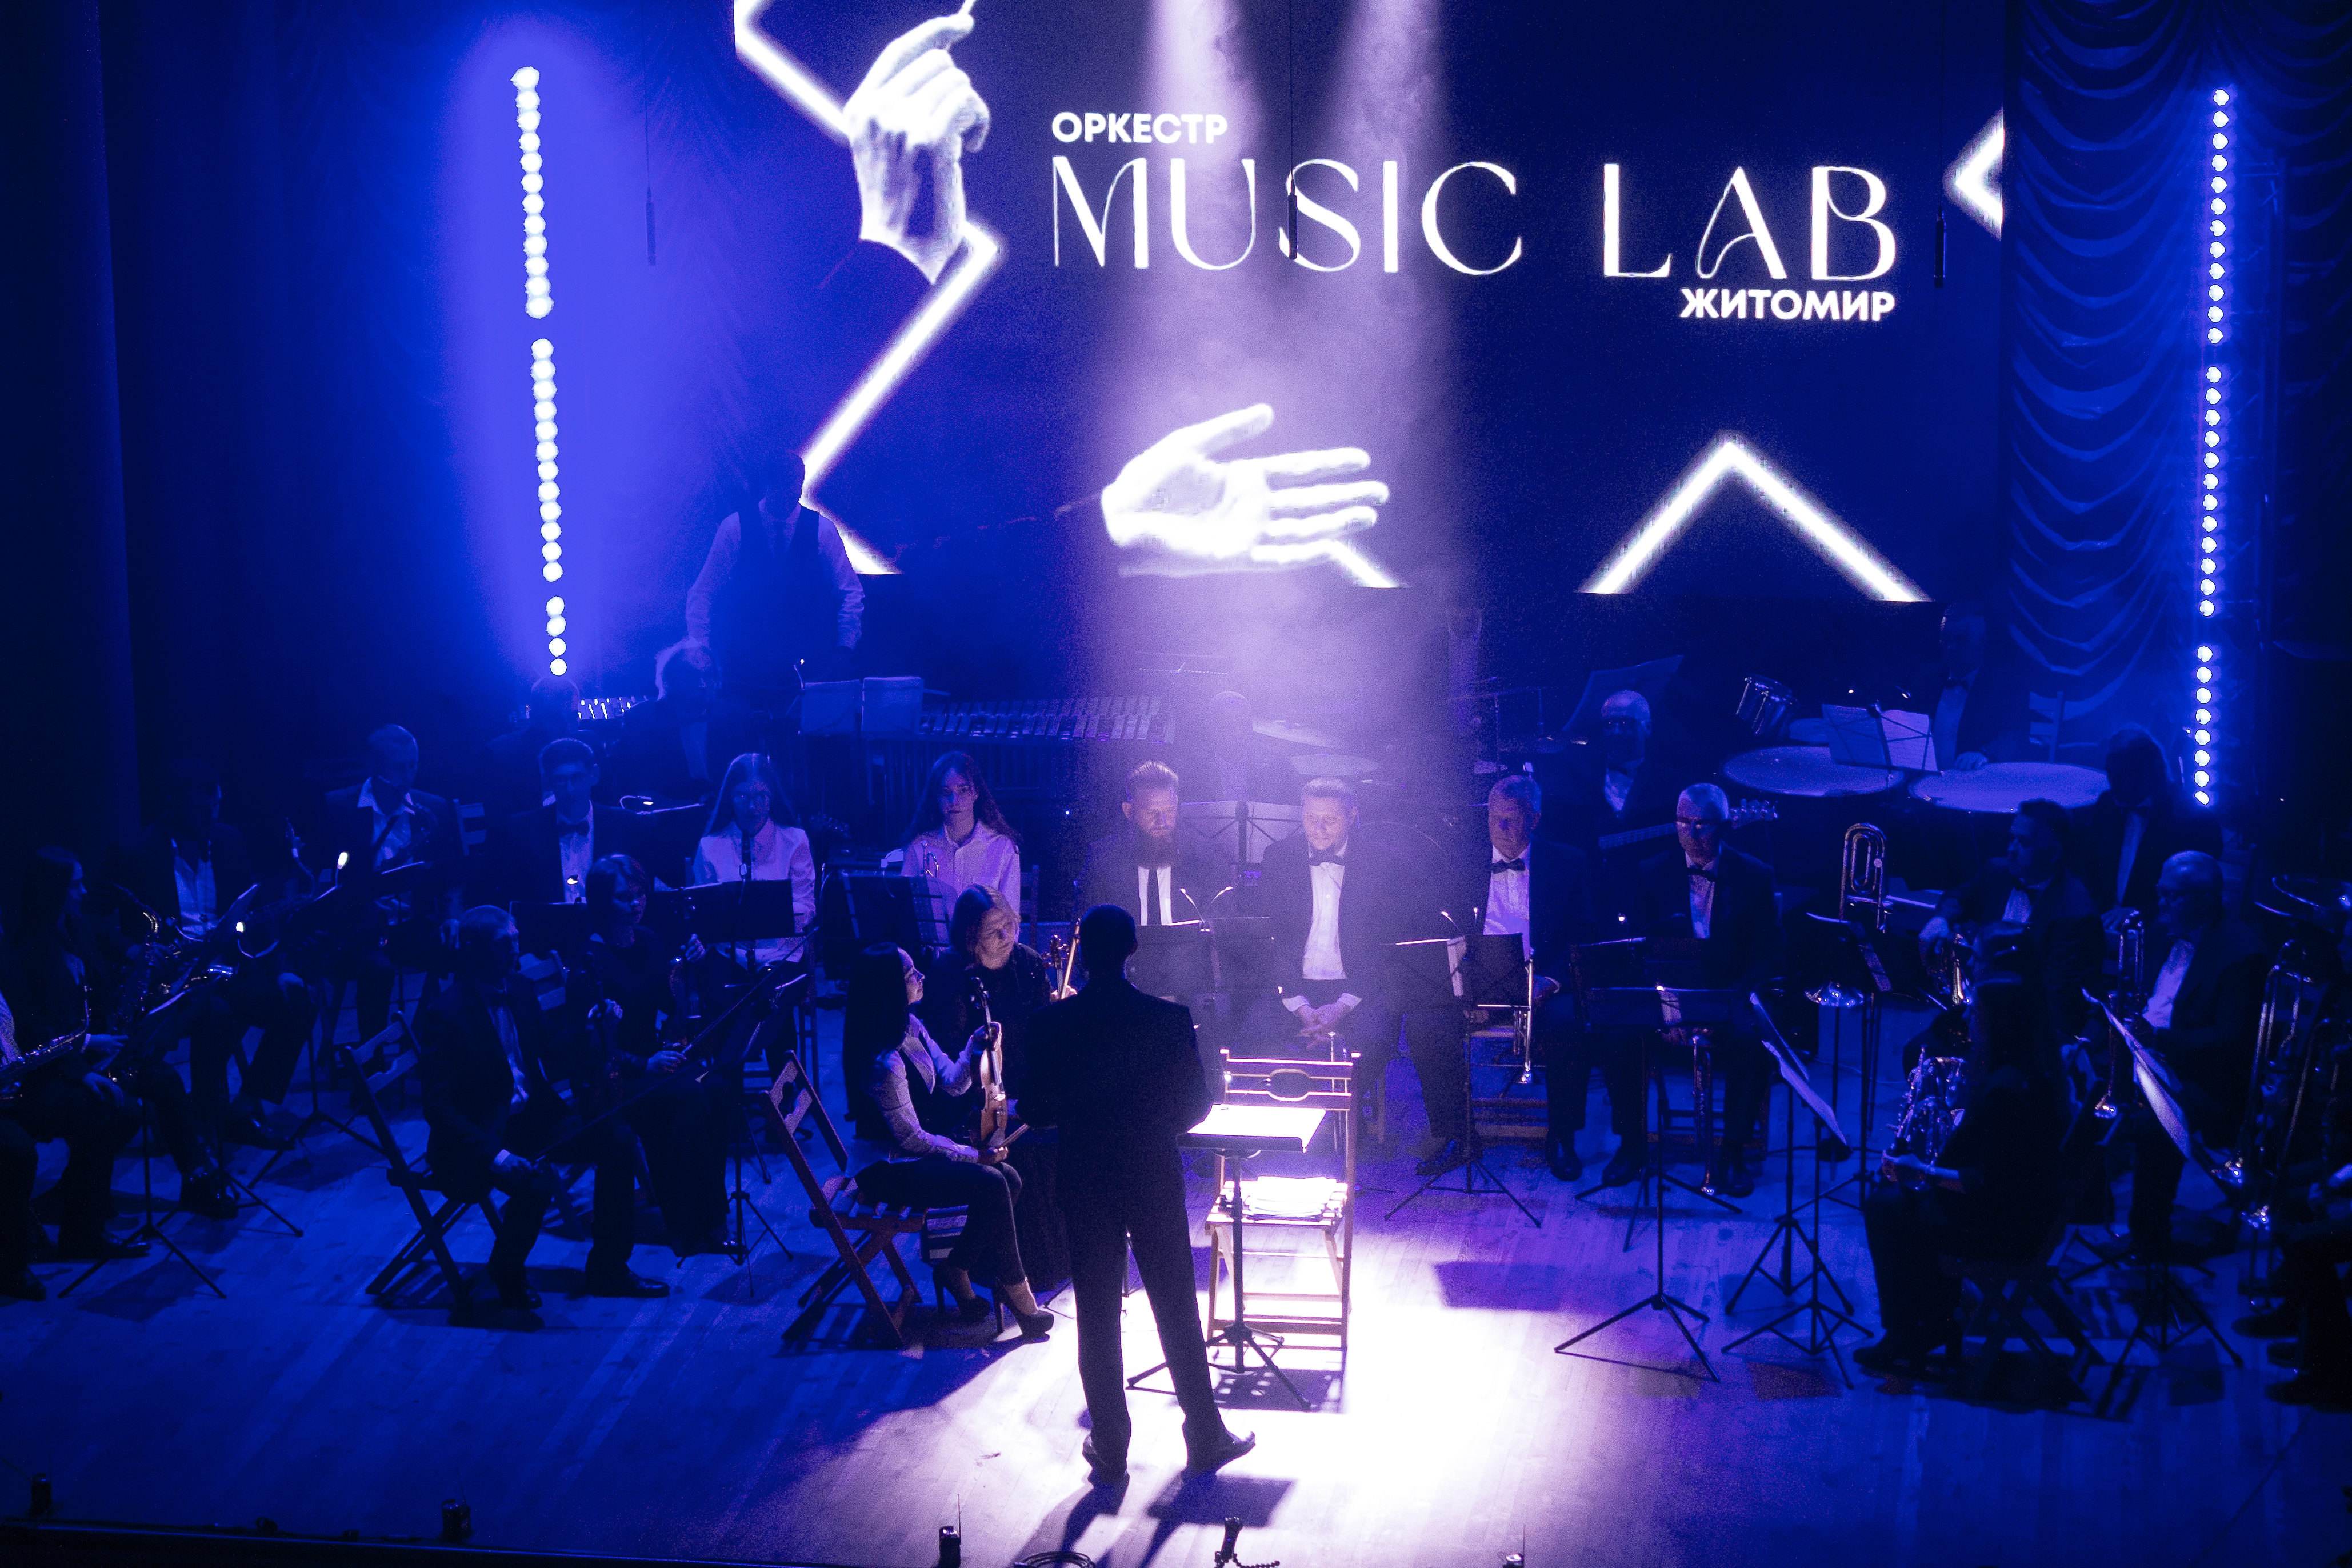 Оновлений оркестр Палацу культури «Music Lab» відіграв свій перший концерт